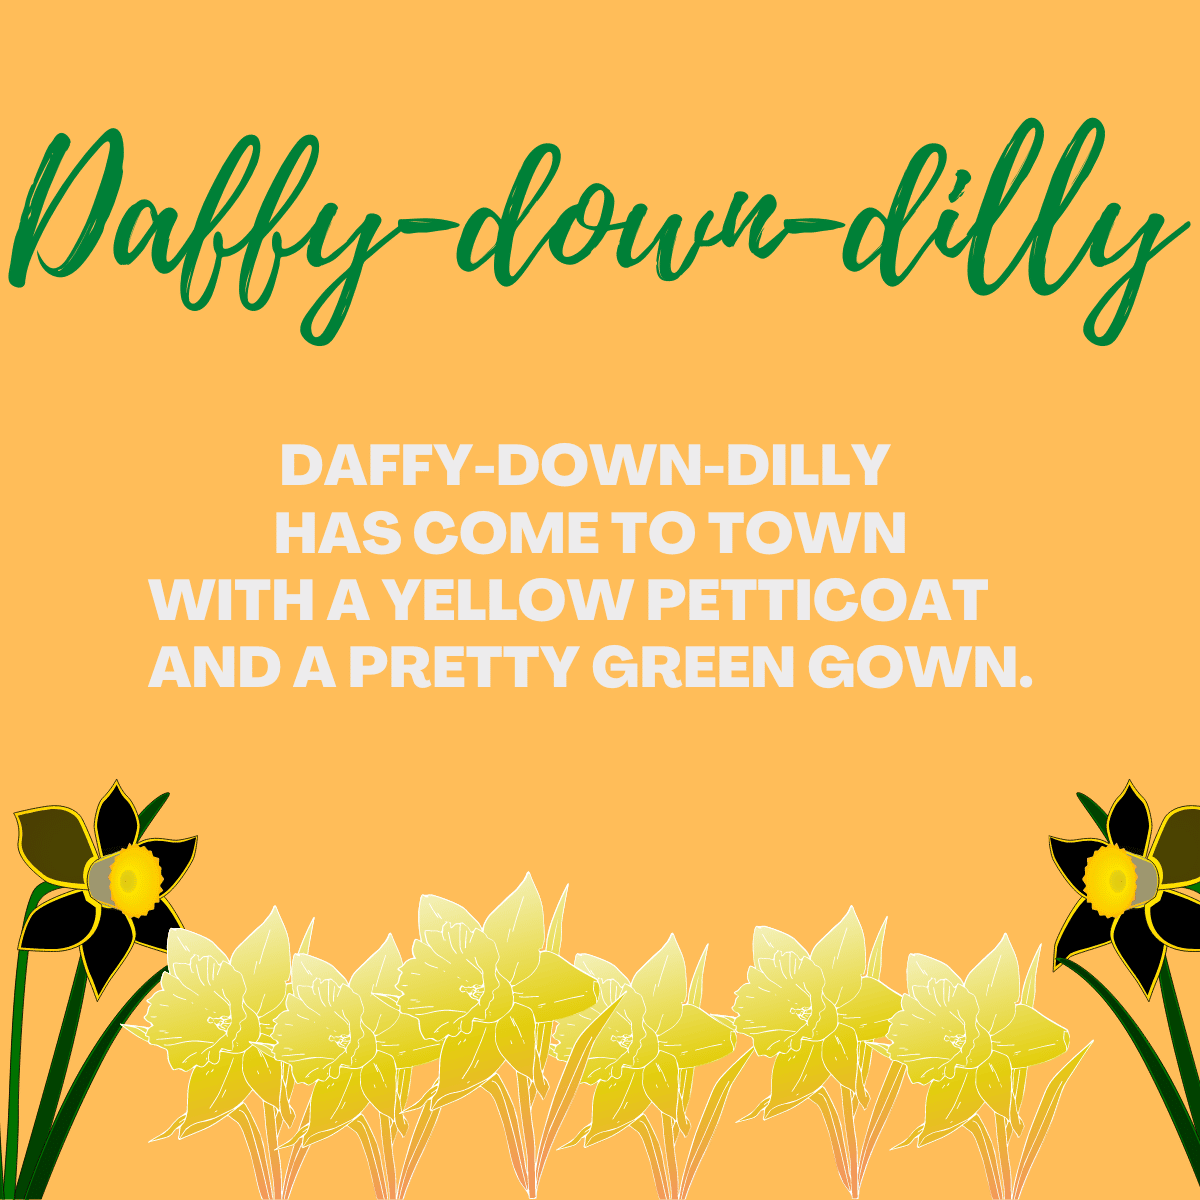 Daffy-down-dilly lyrics